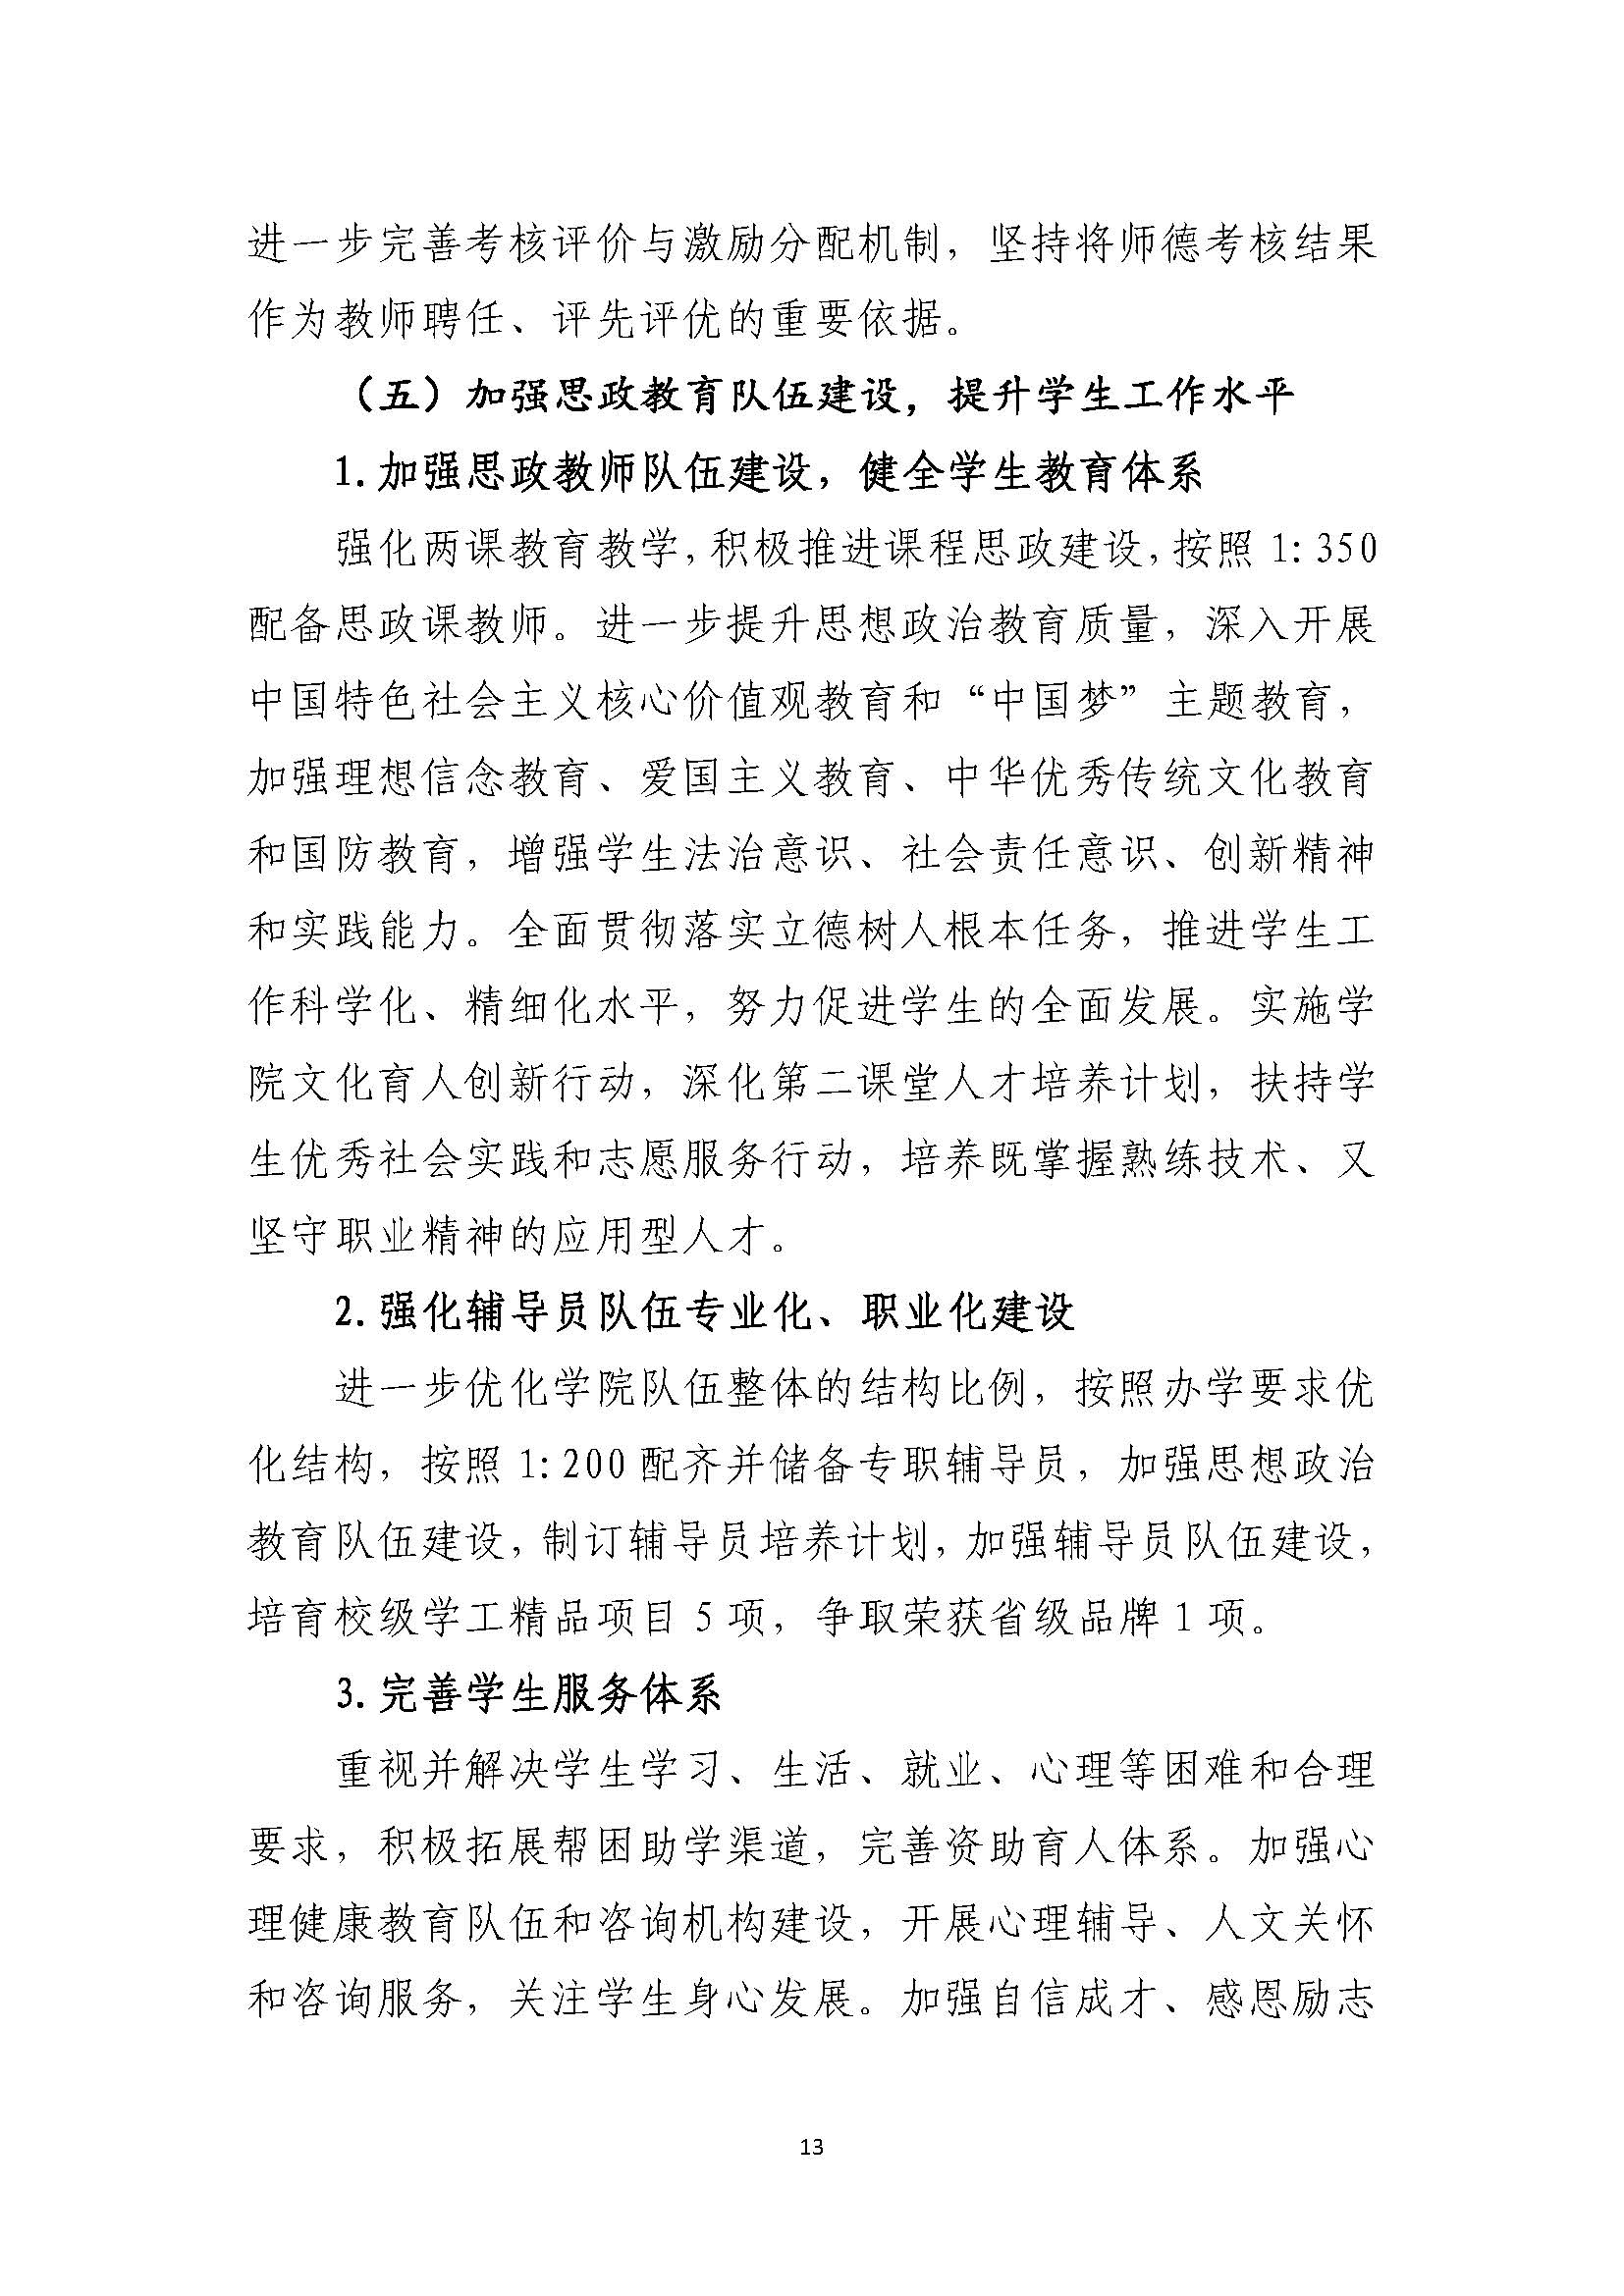 郑州黄河护理职业学院2021-2025年发展规划_页面_13.jpg